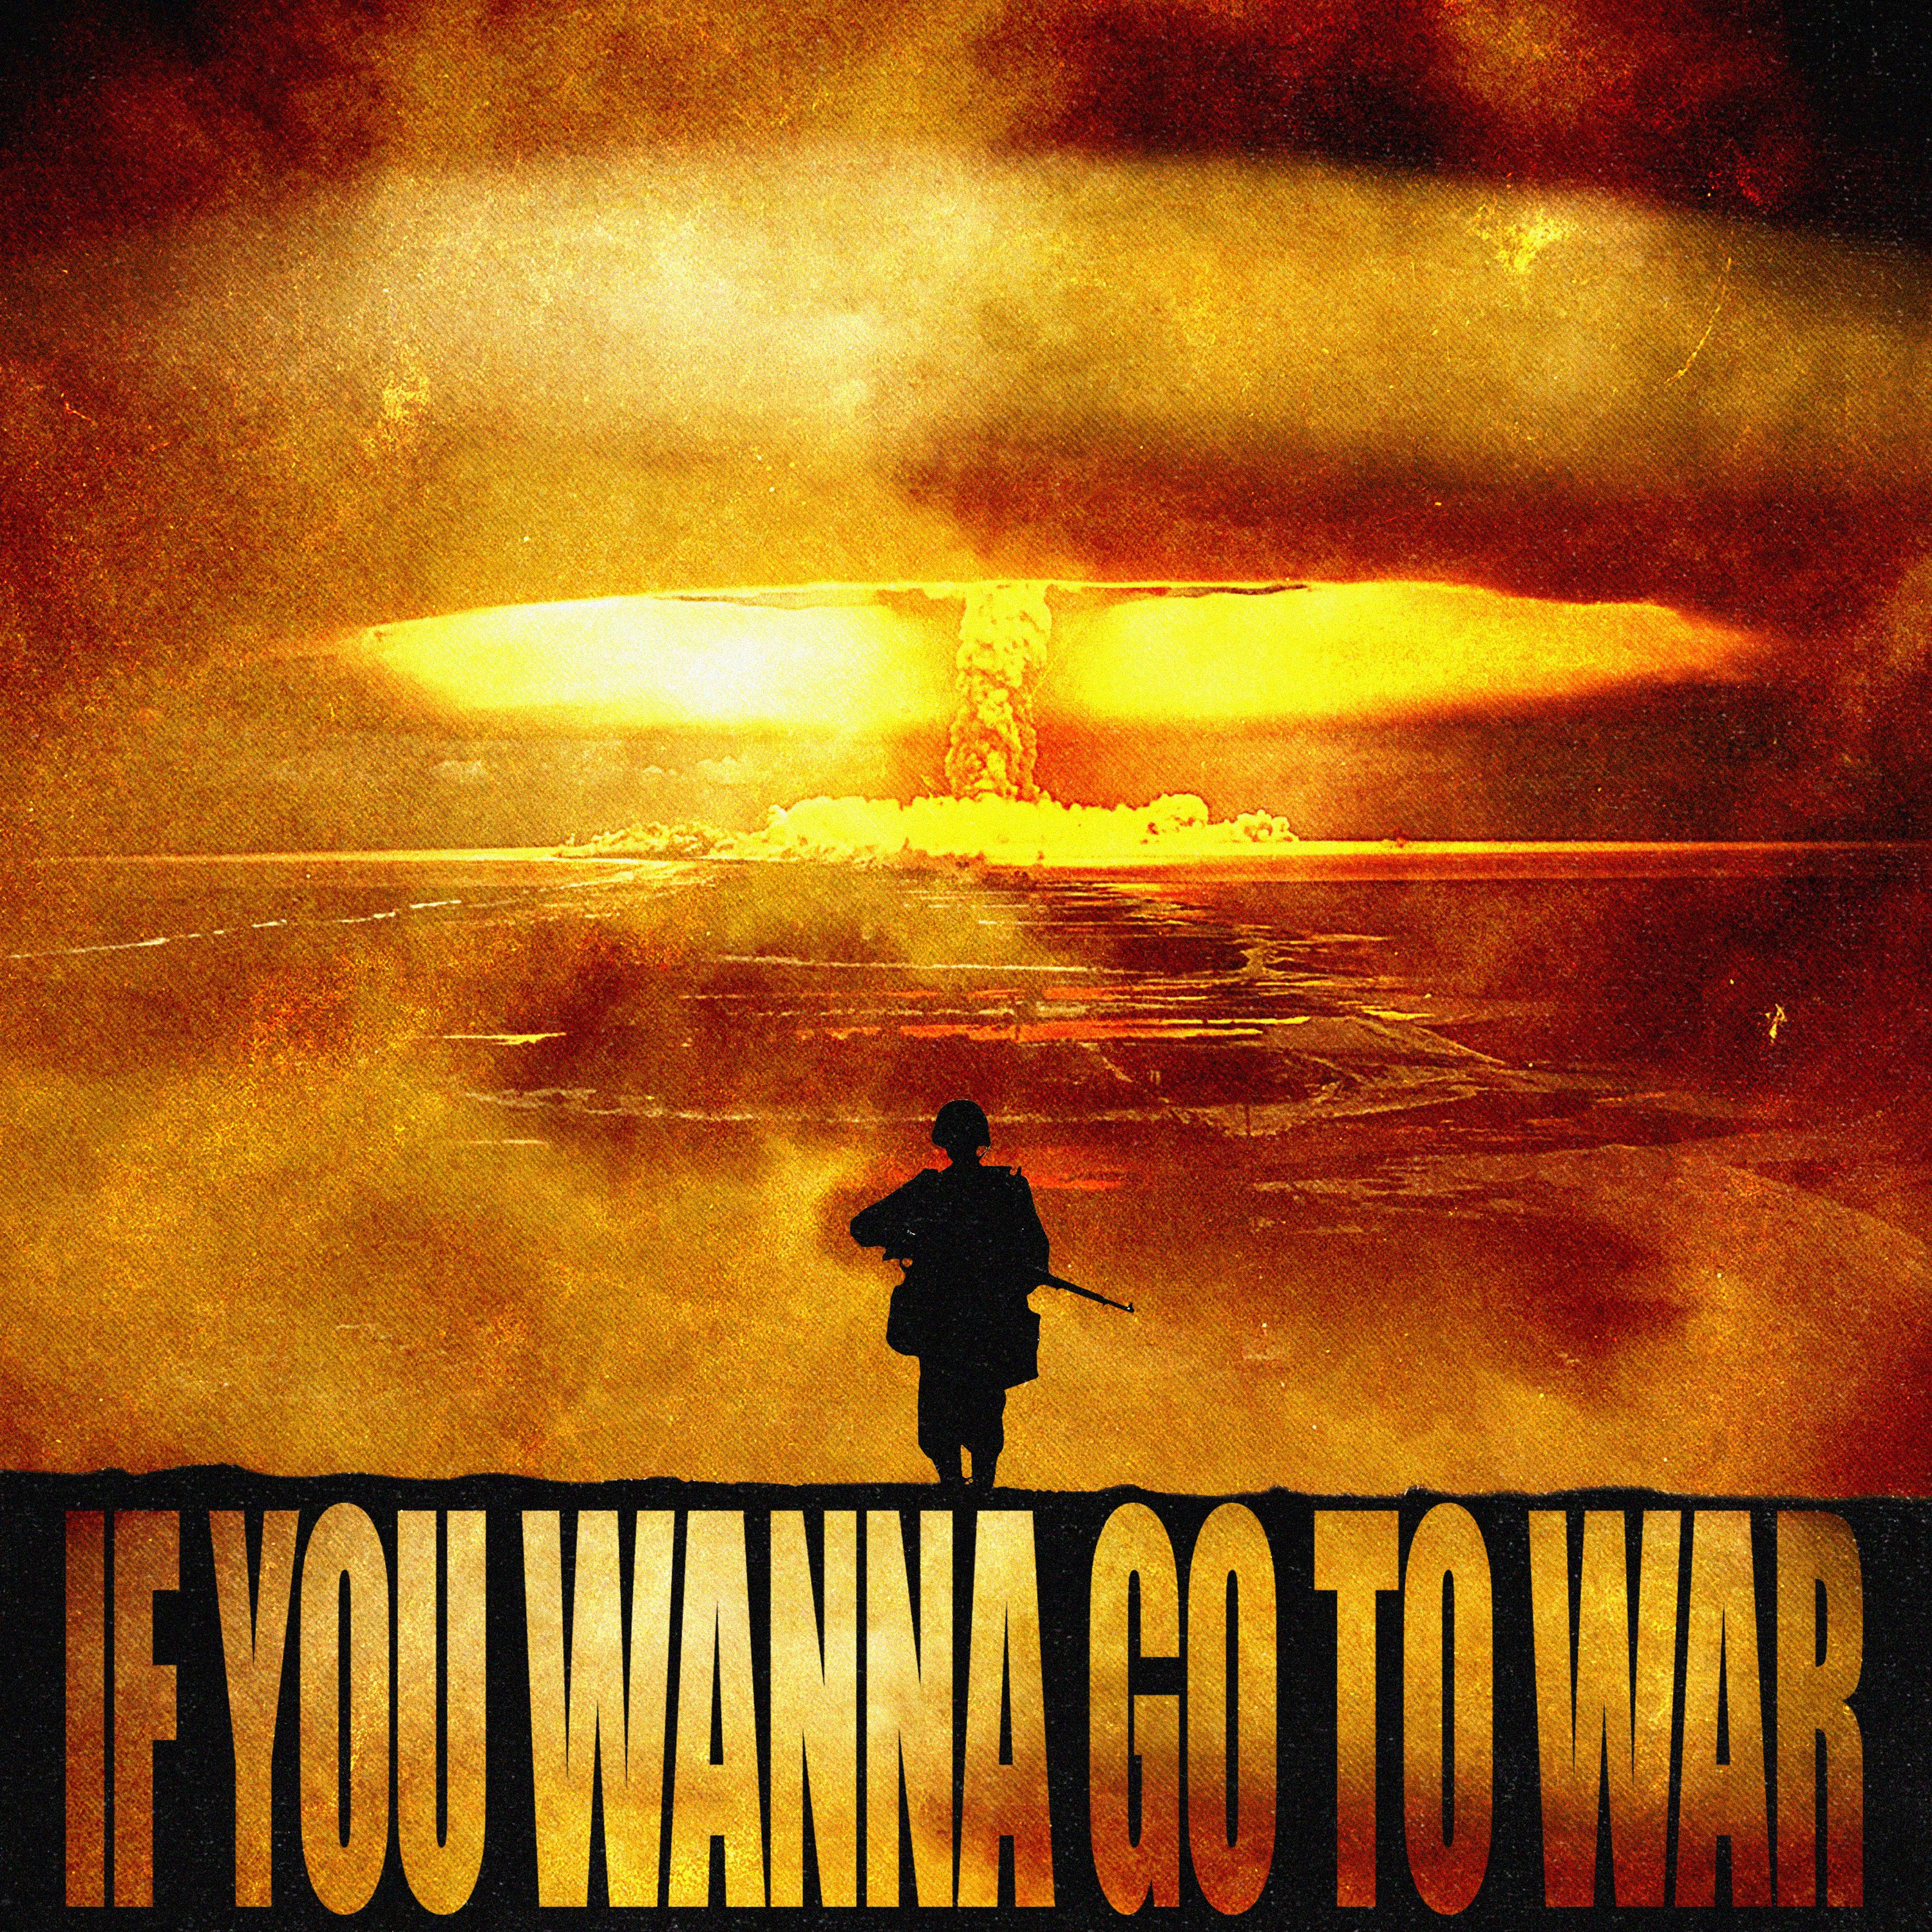 ডাউনলোড করুন IF U WANNA GO TO WAR